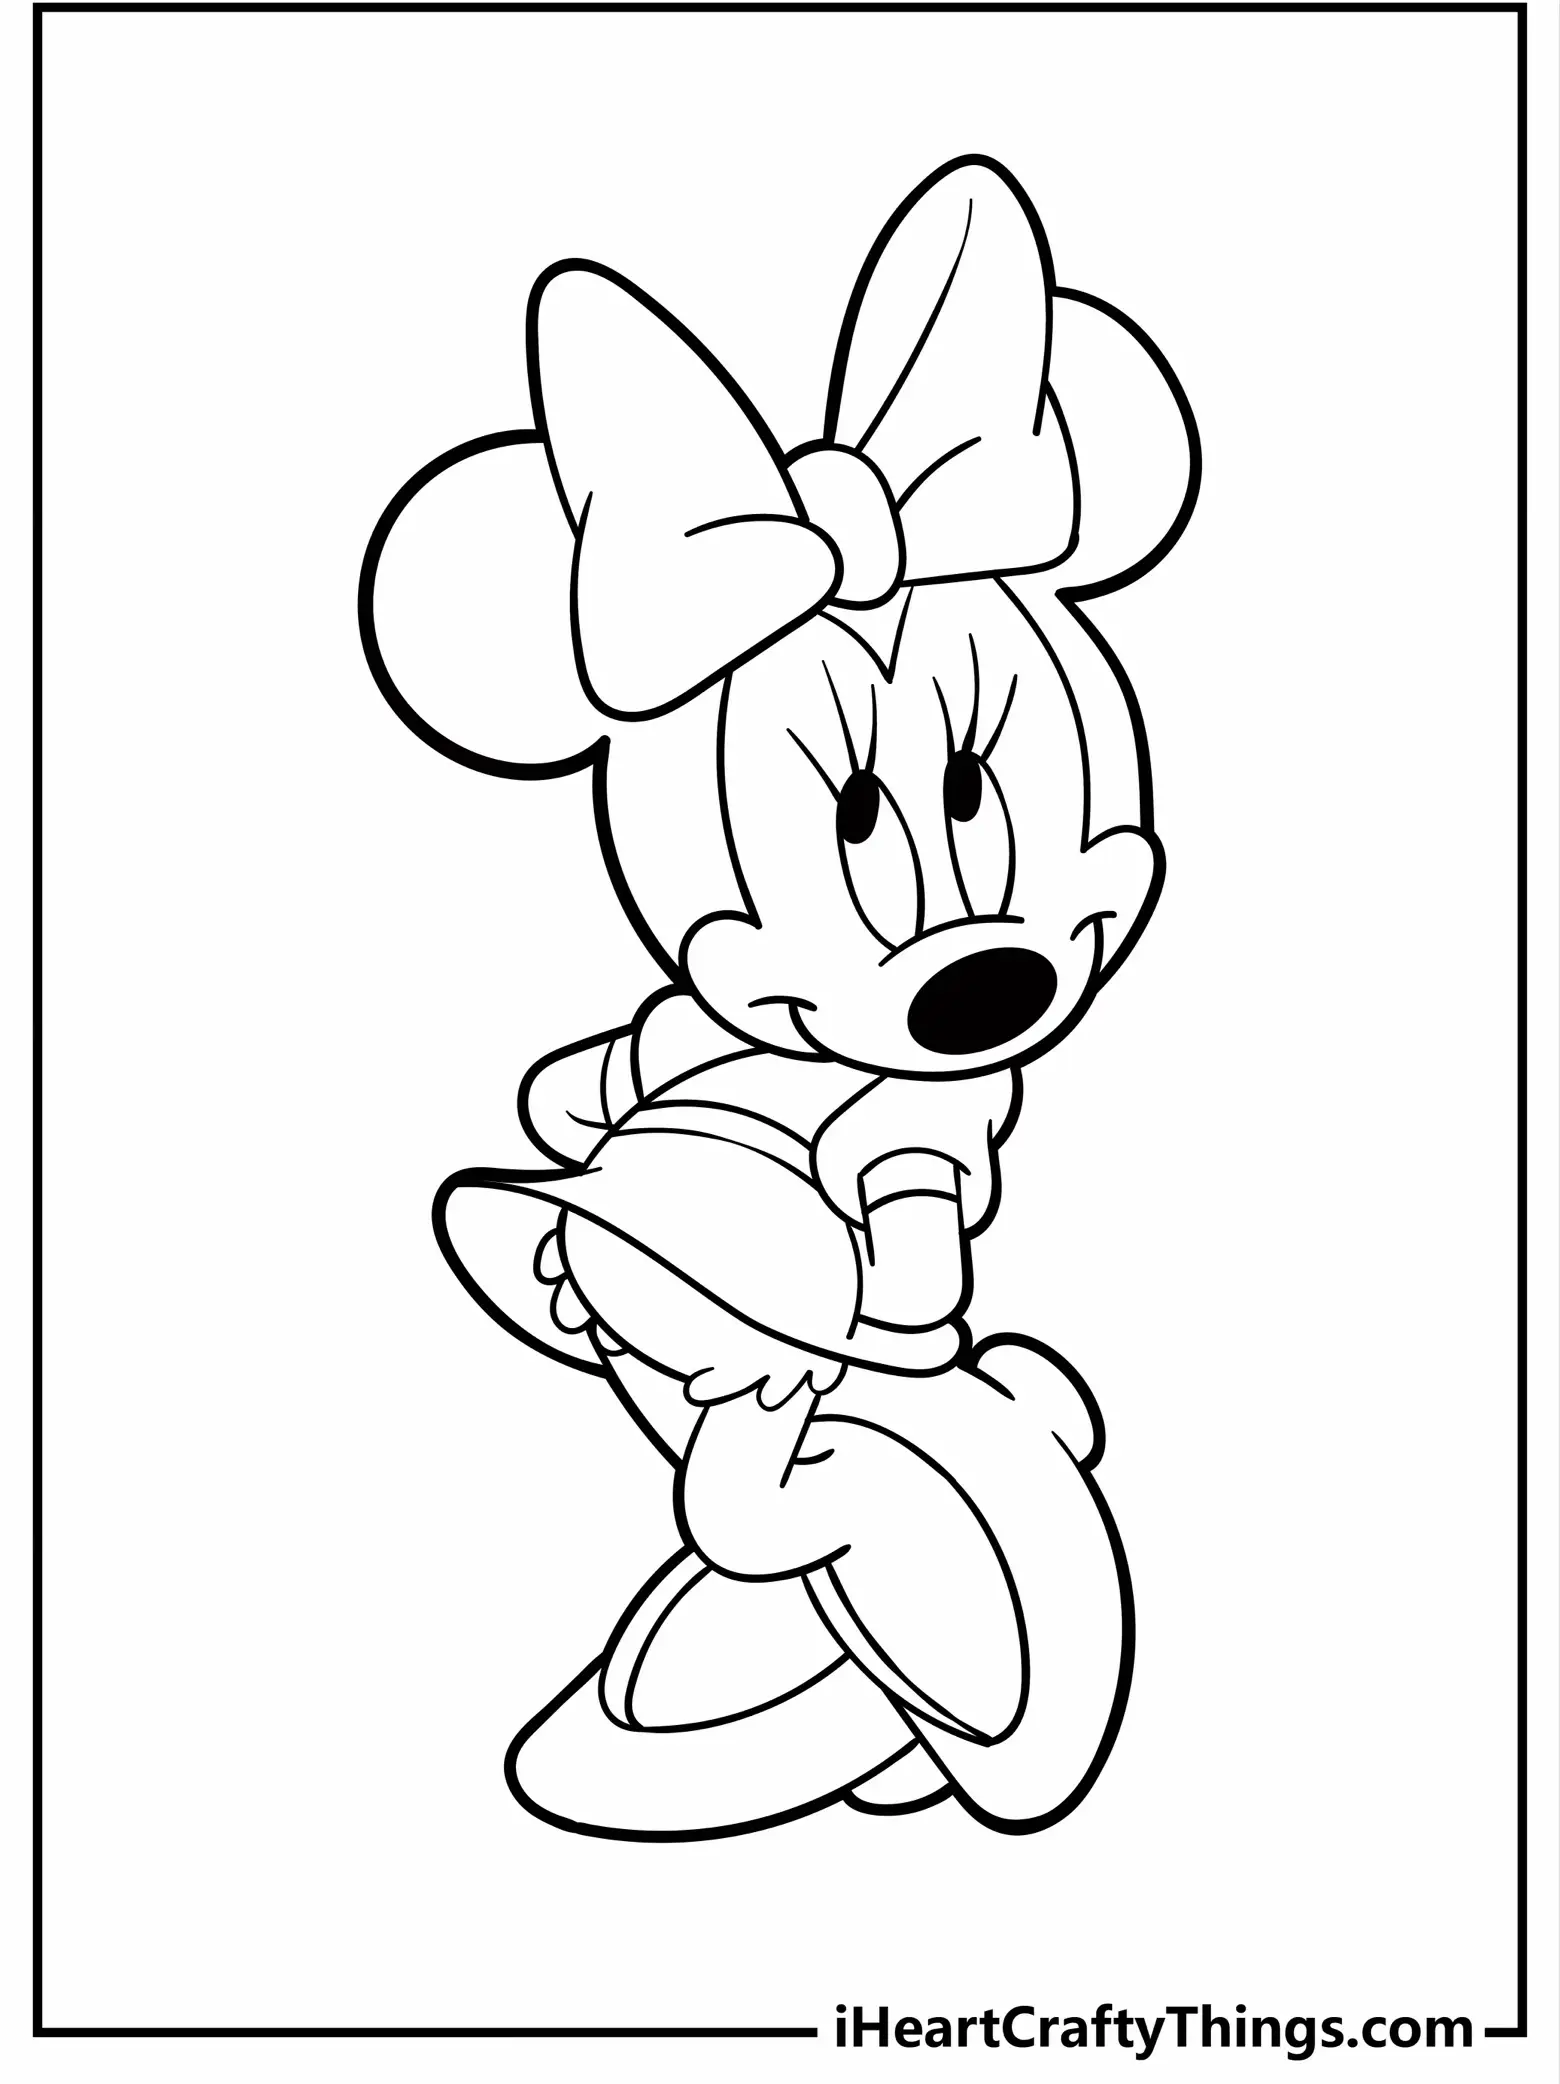 Minnie Mouse Decoration - Lemon8 Search